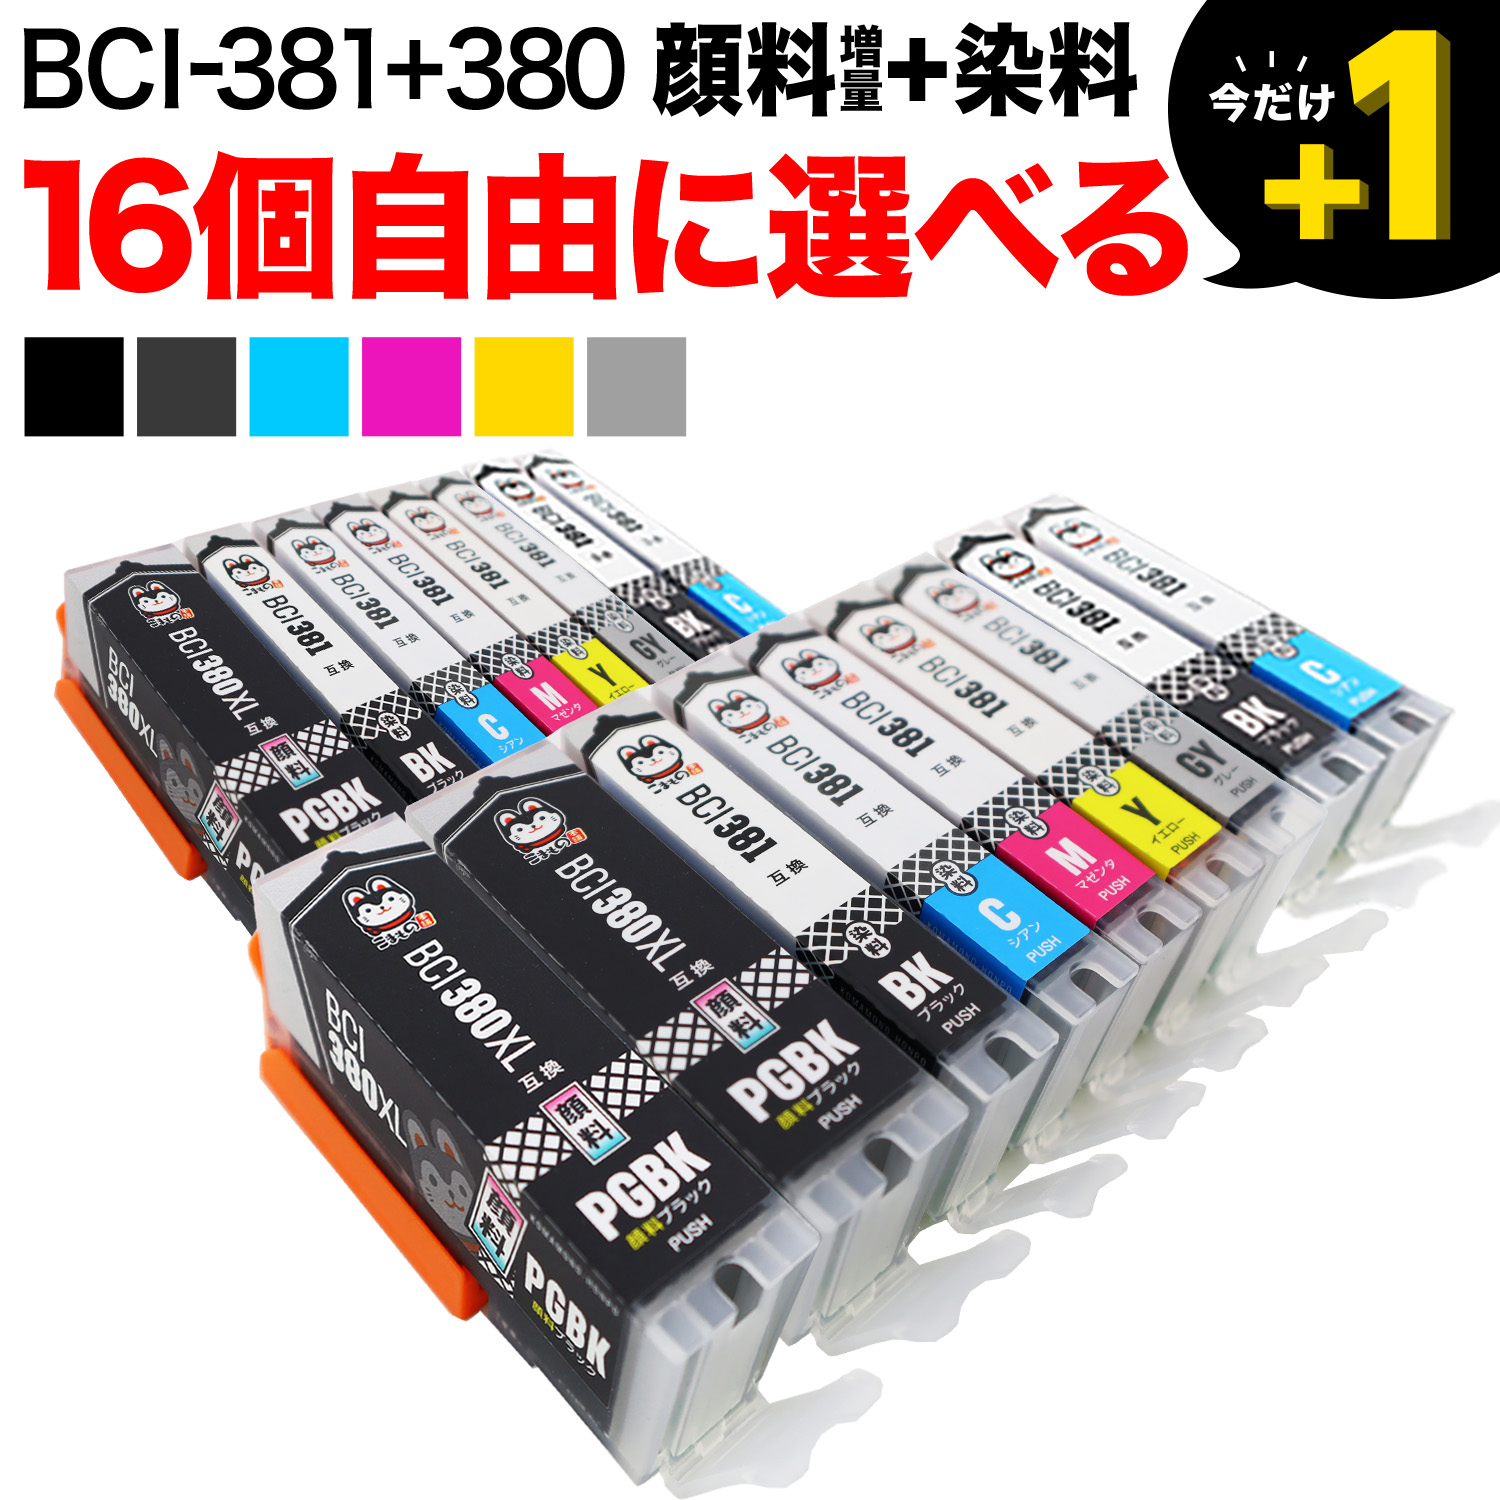 BCI-381 380 5MP 互換インクカートリッジ Canon 用 BCI-381XL (BK